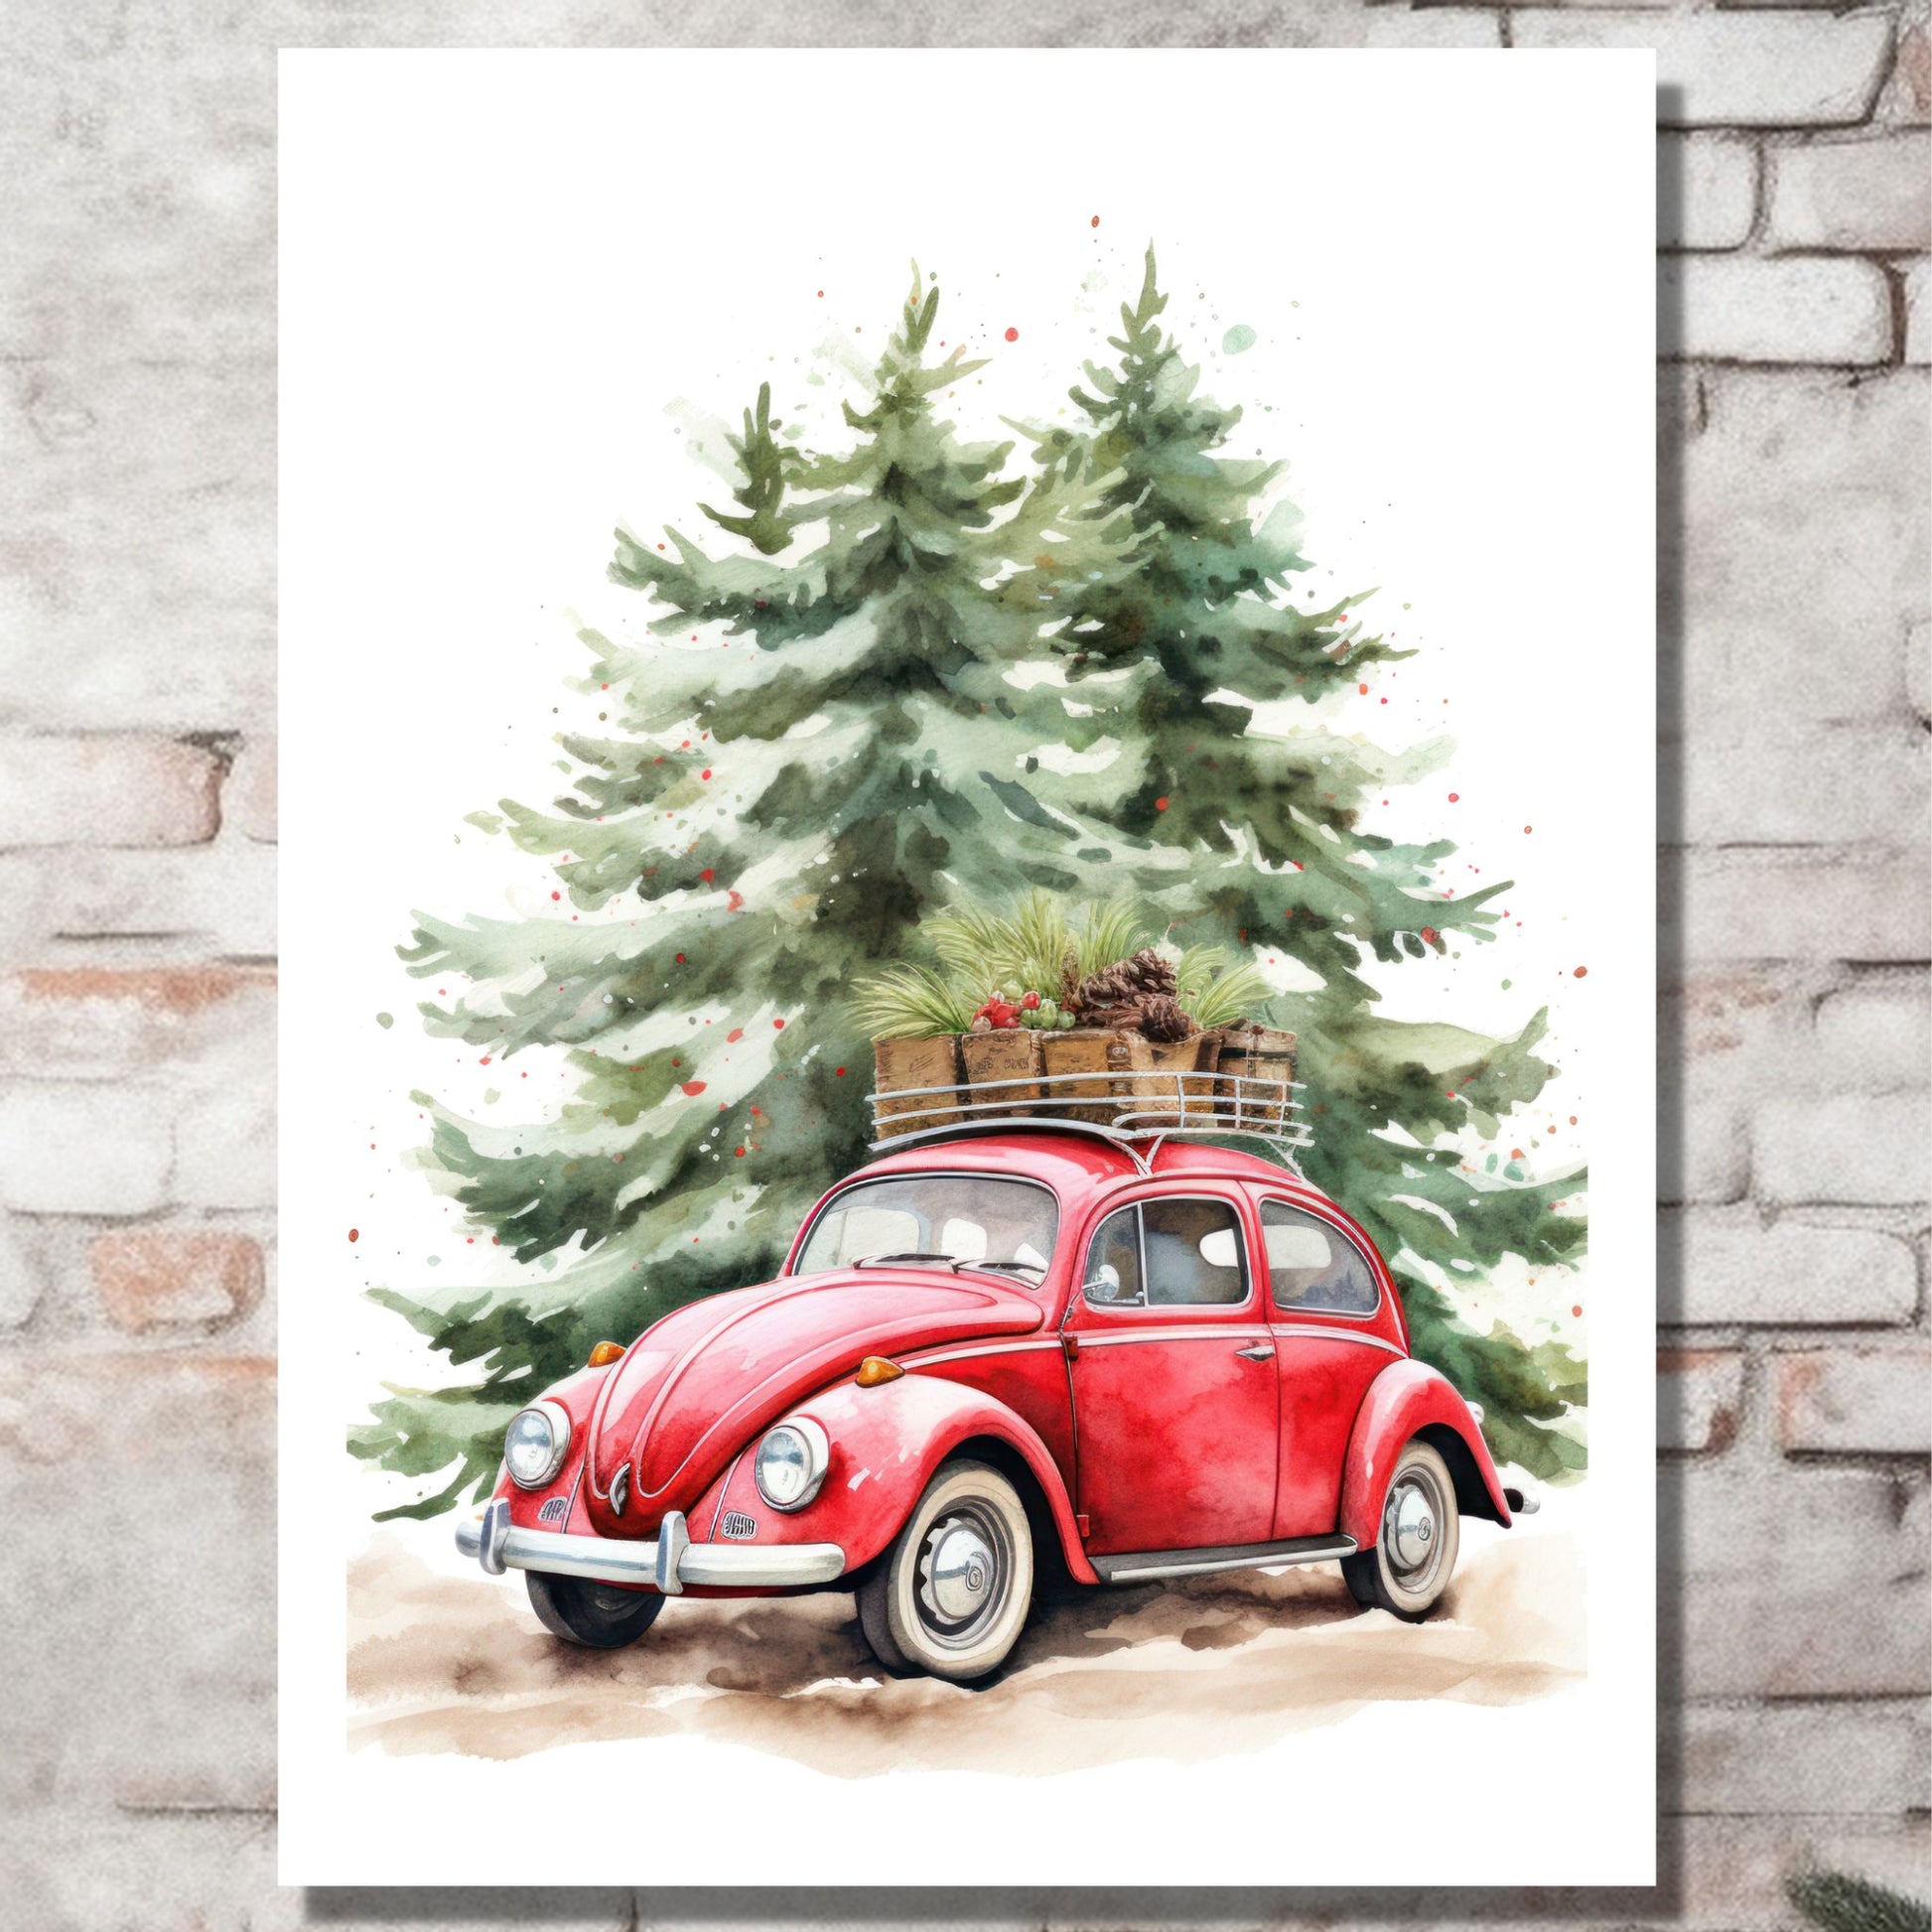 Plakat og lerret med grafisk julemotiv av gammel, rød volkswagen boble. Bilen kjører i en skog, og på taket er den lastet med juledekorasjoner. På bildet henger motivet på lerret på en murvegg.